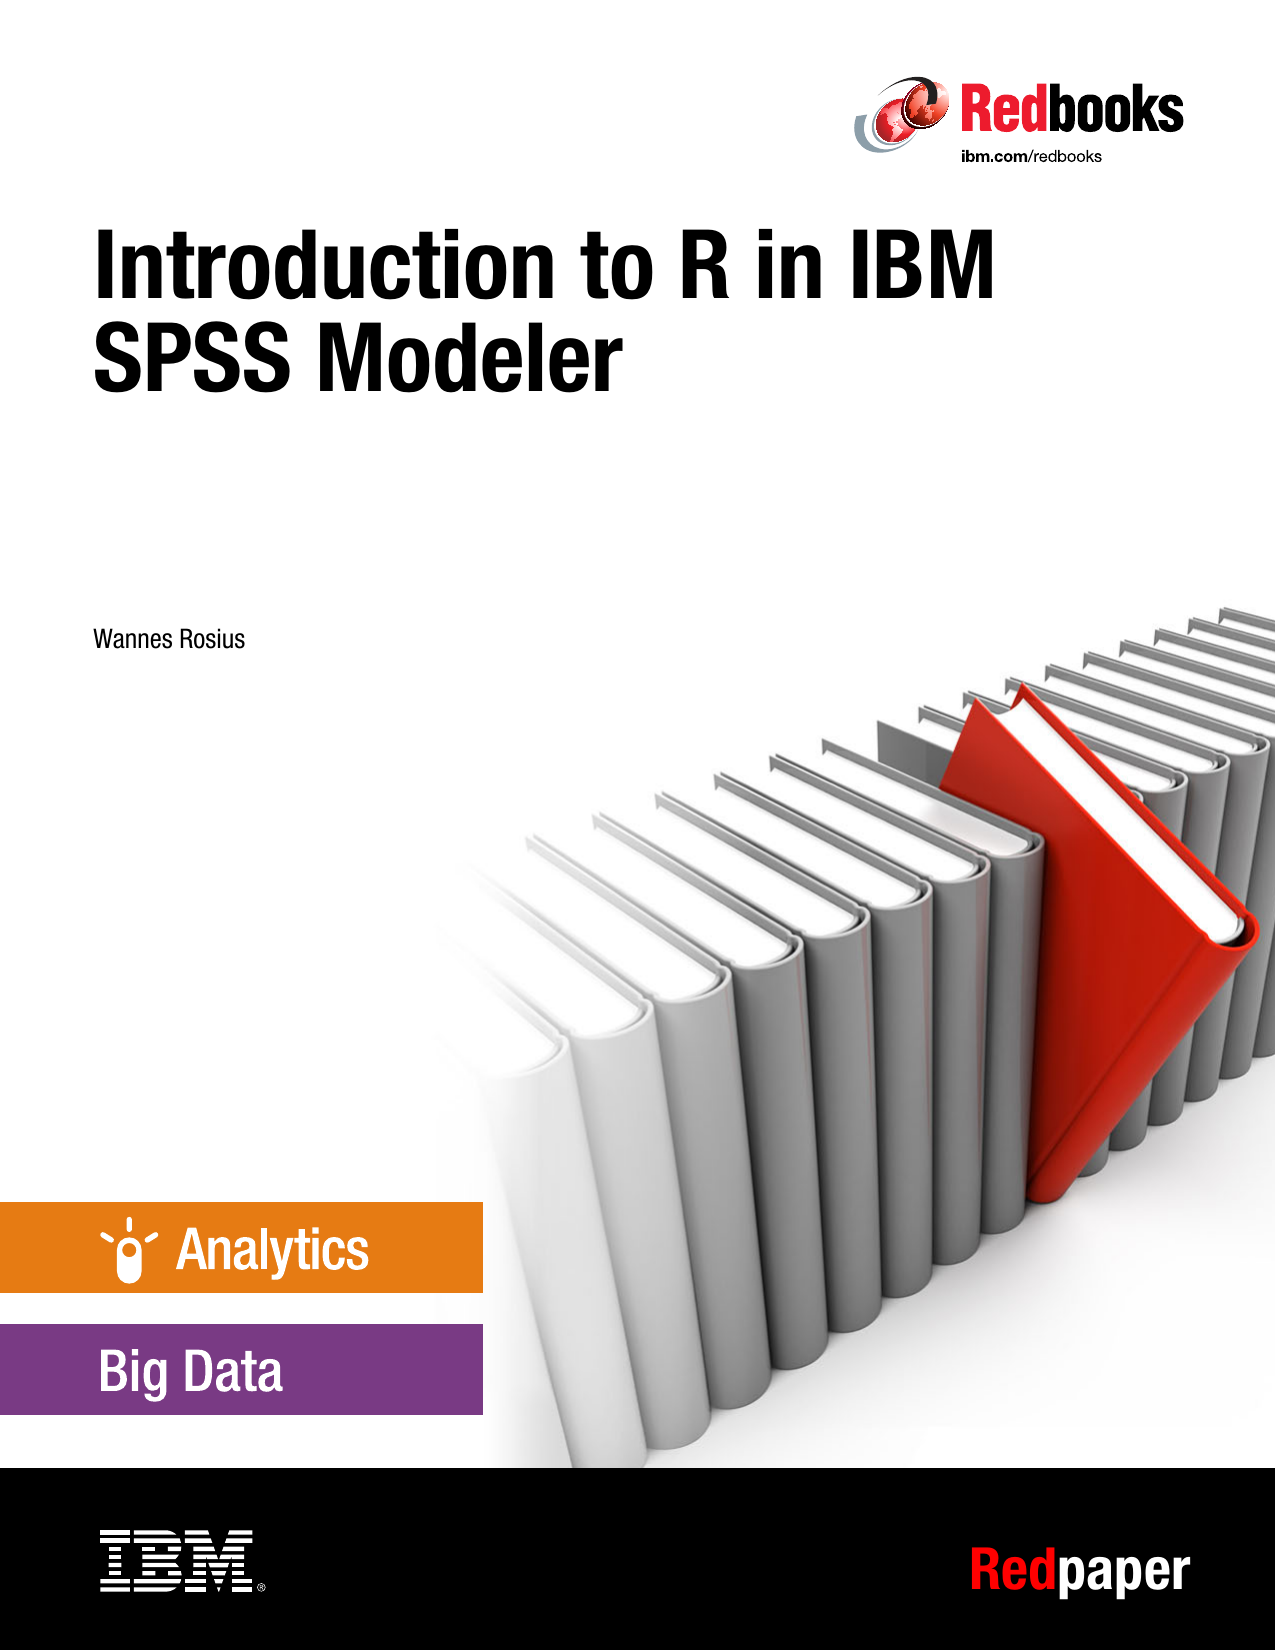 ibm spss modeler includes what kind of models